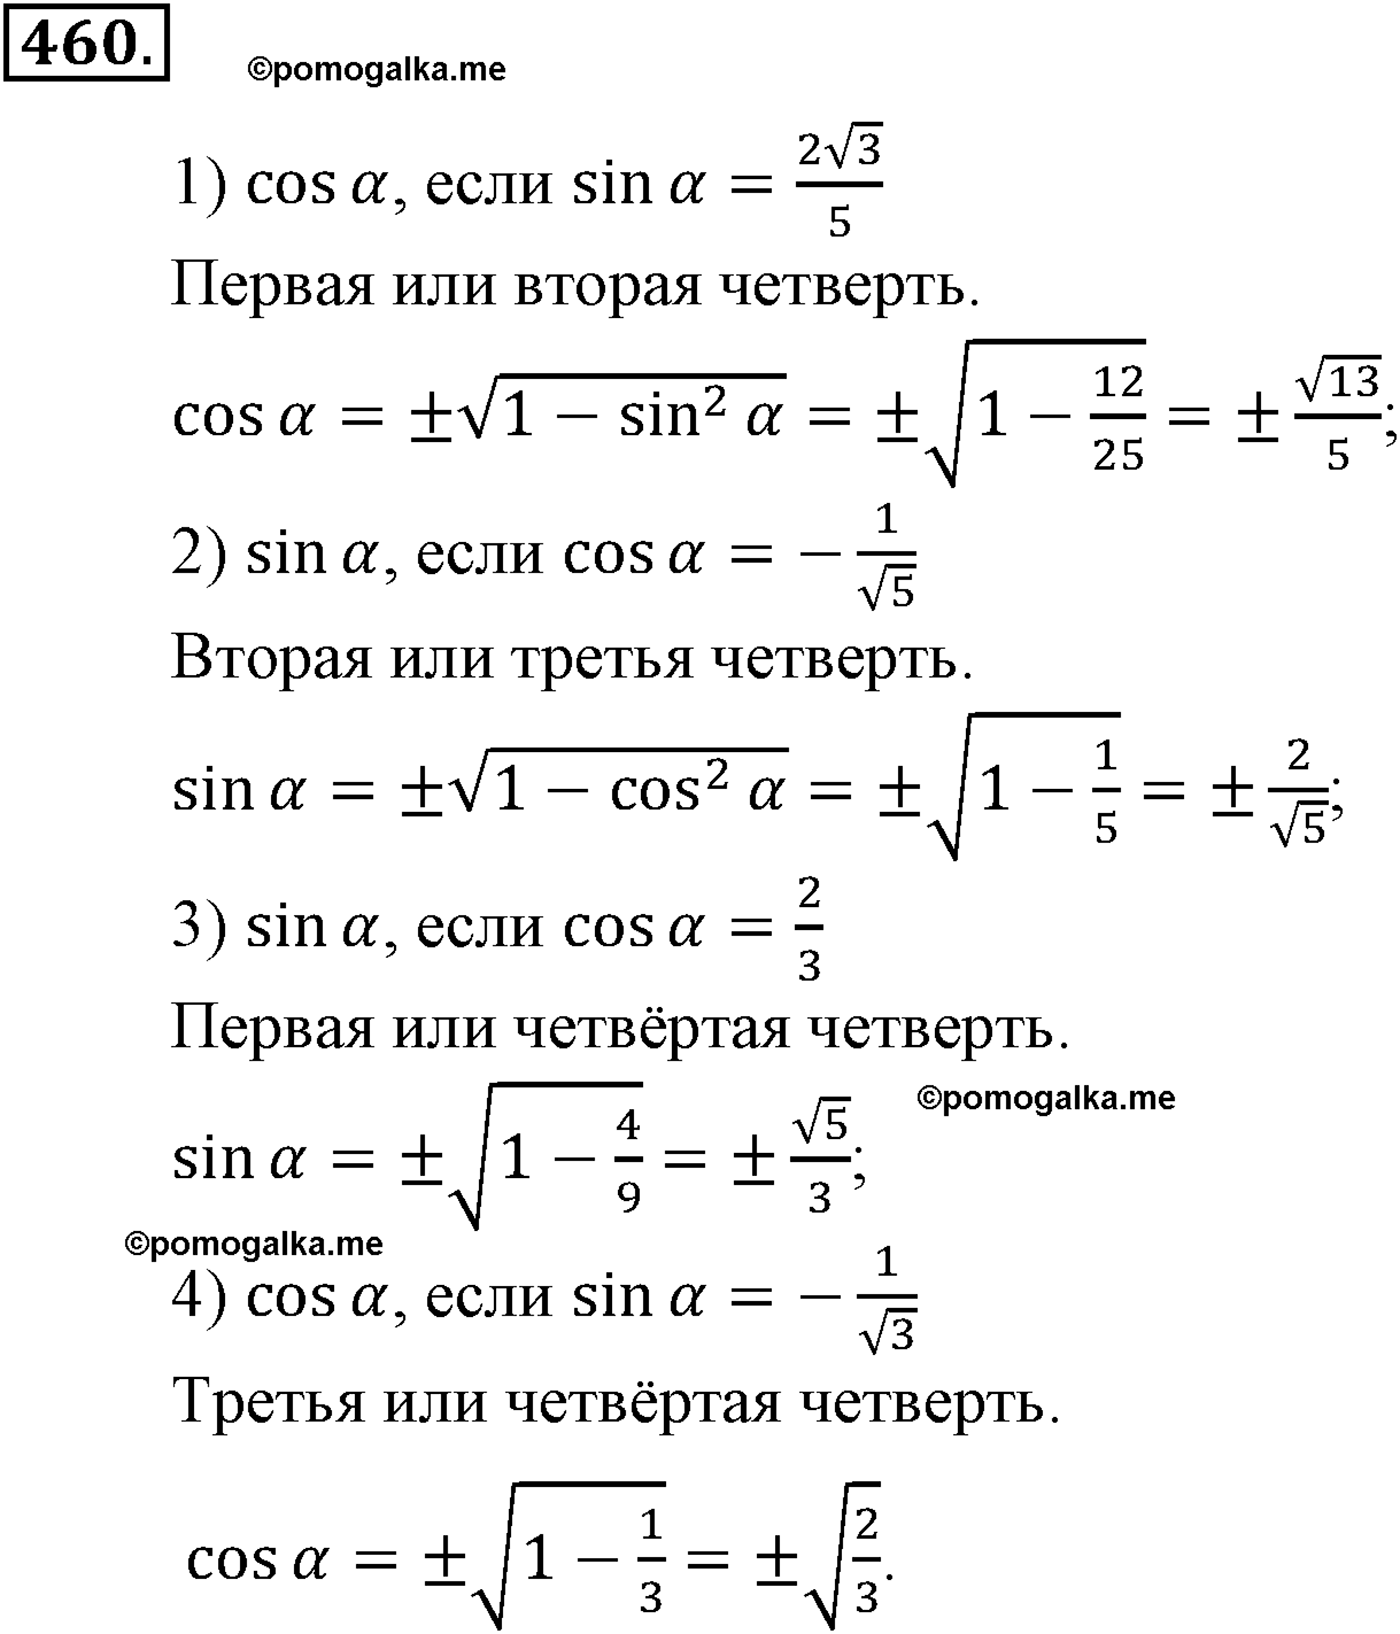 разбор задачи №460 по алгебре за 10-11 класс из учебника Алимова, Колягина